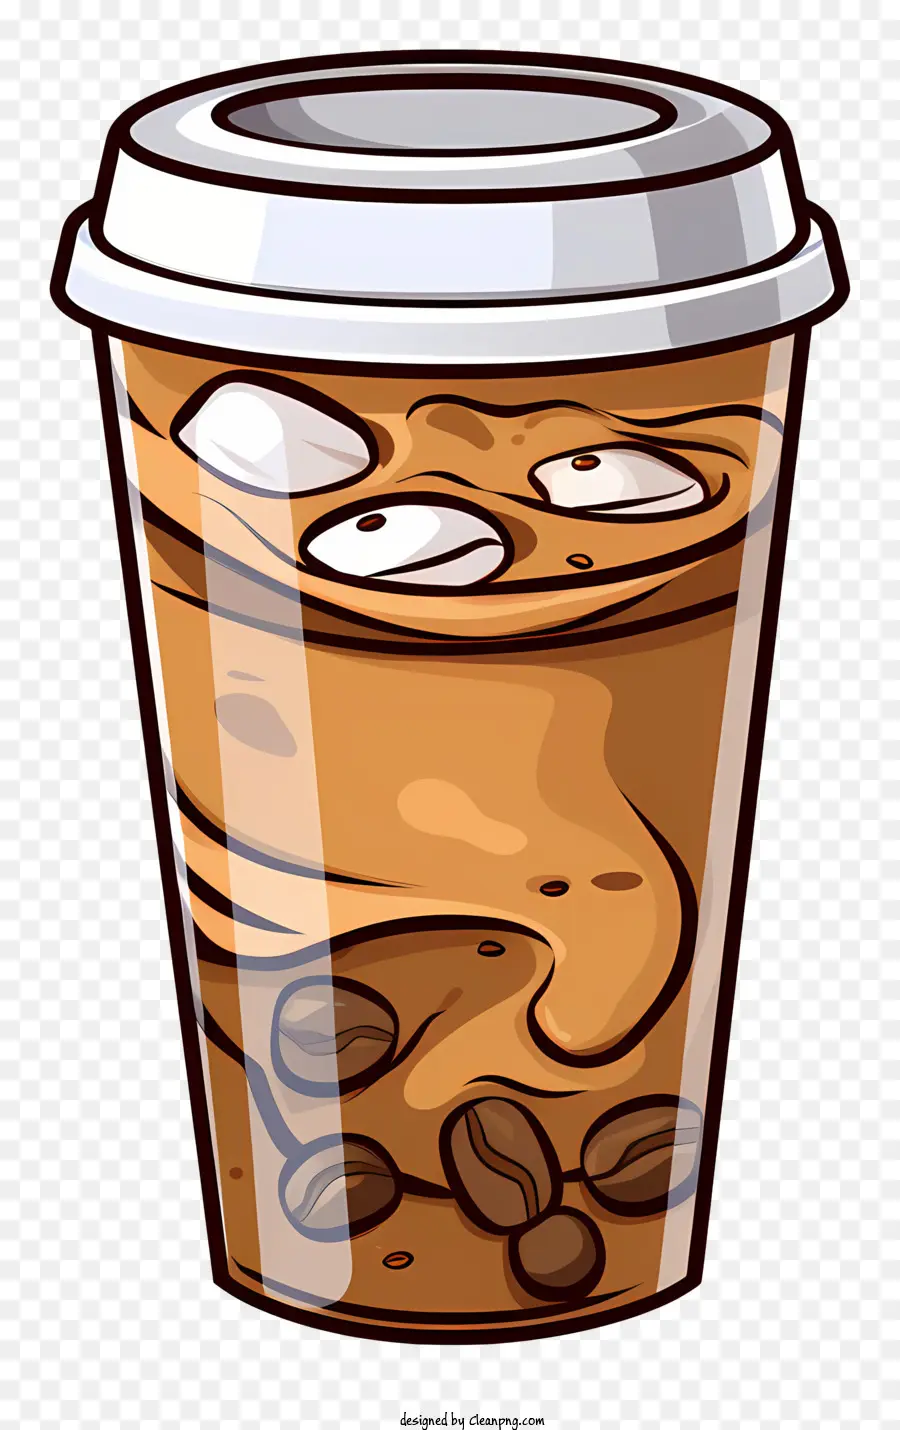 Tasse Kaffee - Tasse heißer Kaffee mit cremiger Konsistenz